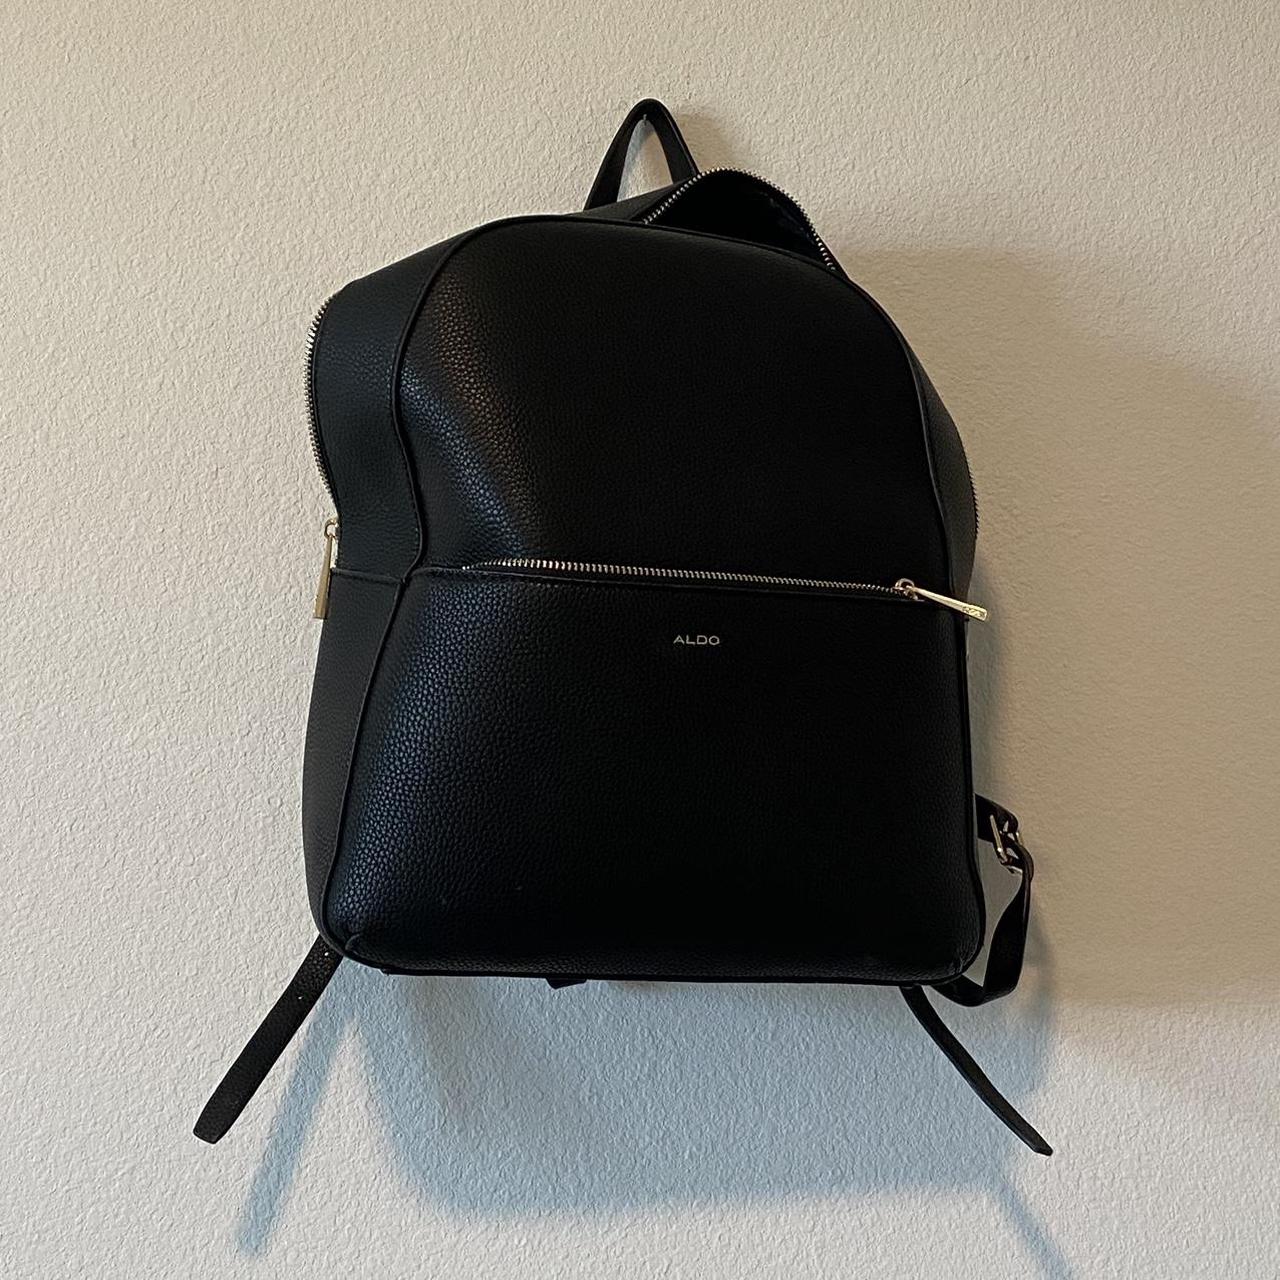 Aldo Backpack NWT Tan Gold Zippers Vegan Leather Side Pockets, Adjustable  Straps | eBay